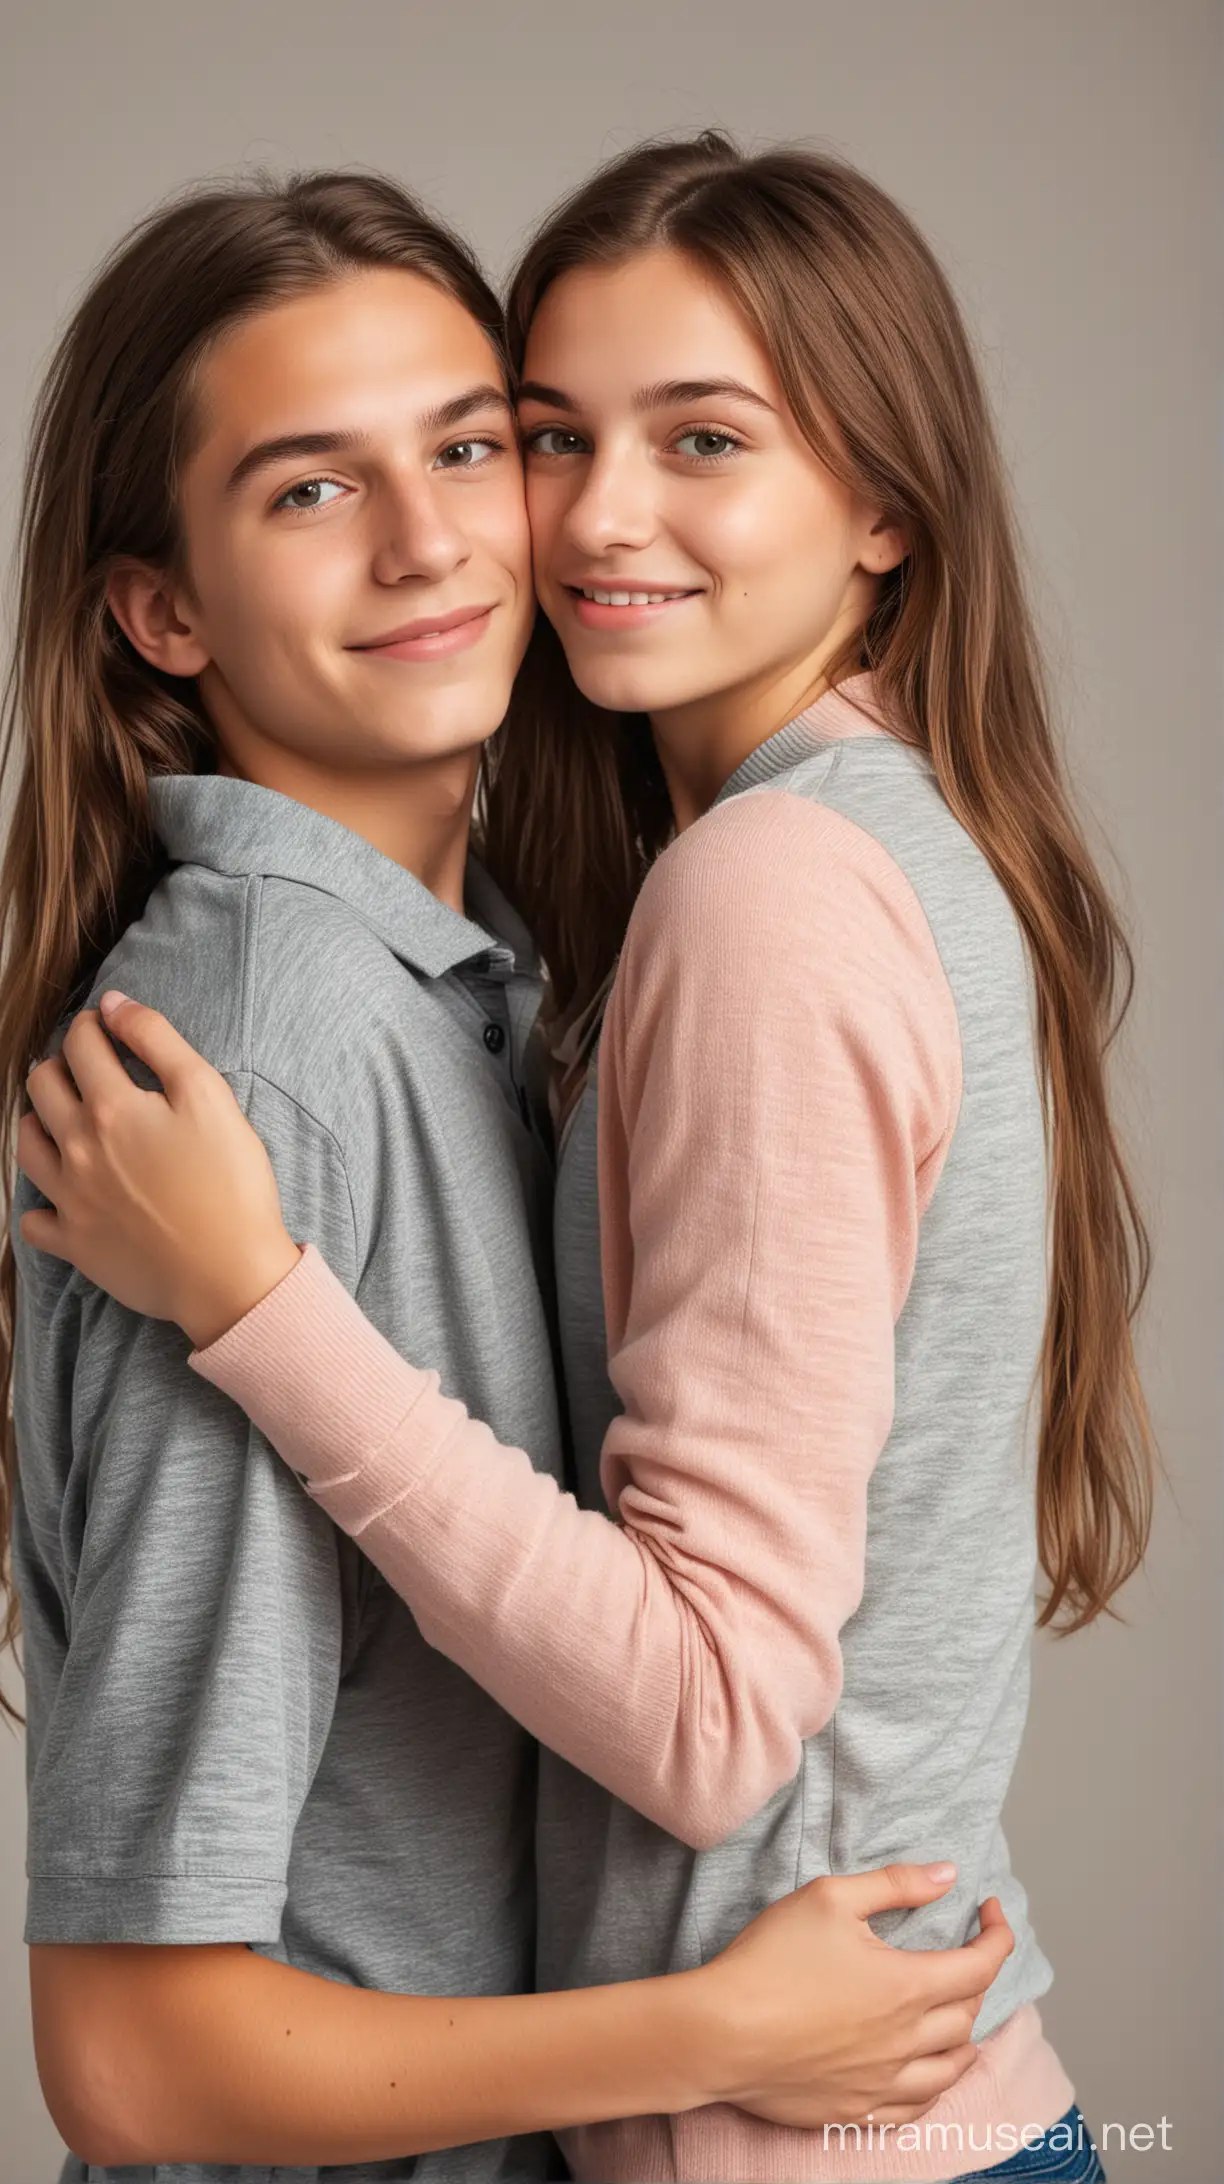  Teen twin siblings boy hugging girl from behind 